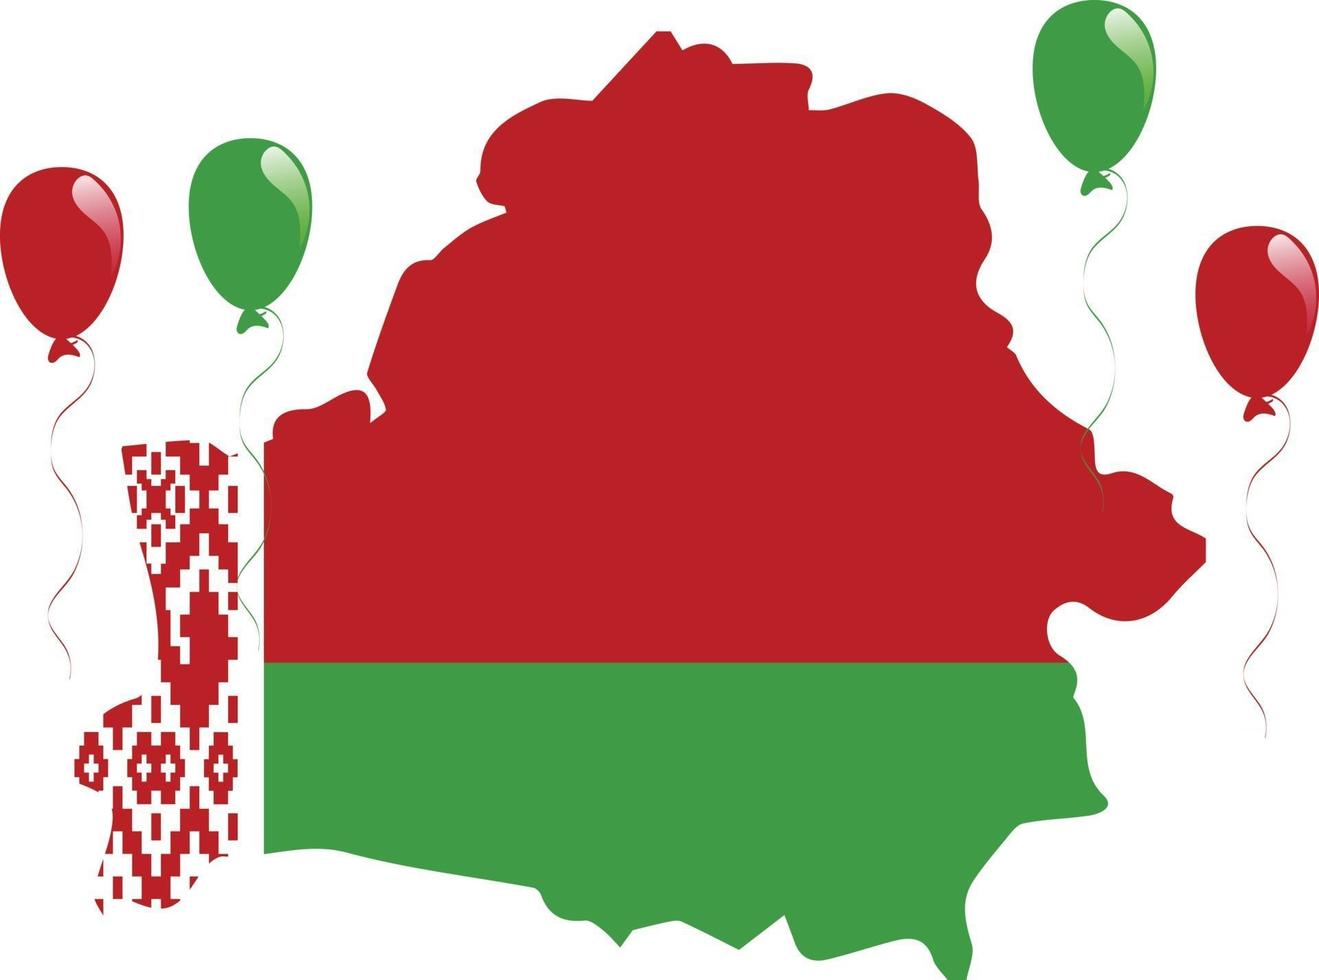 vitryssland karta och flagga med ballonger på vit bakgrund vektor